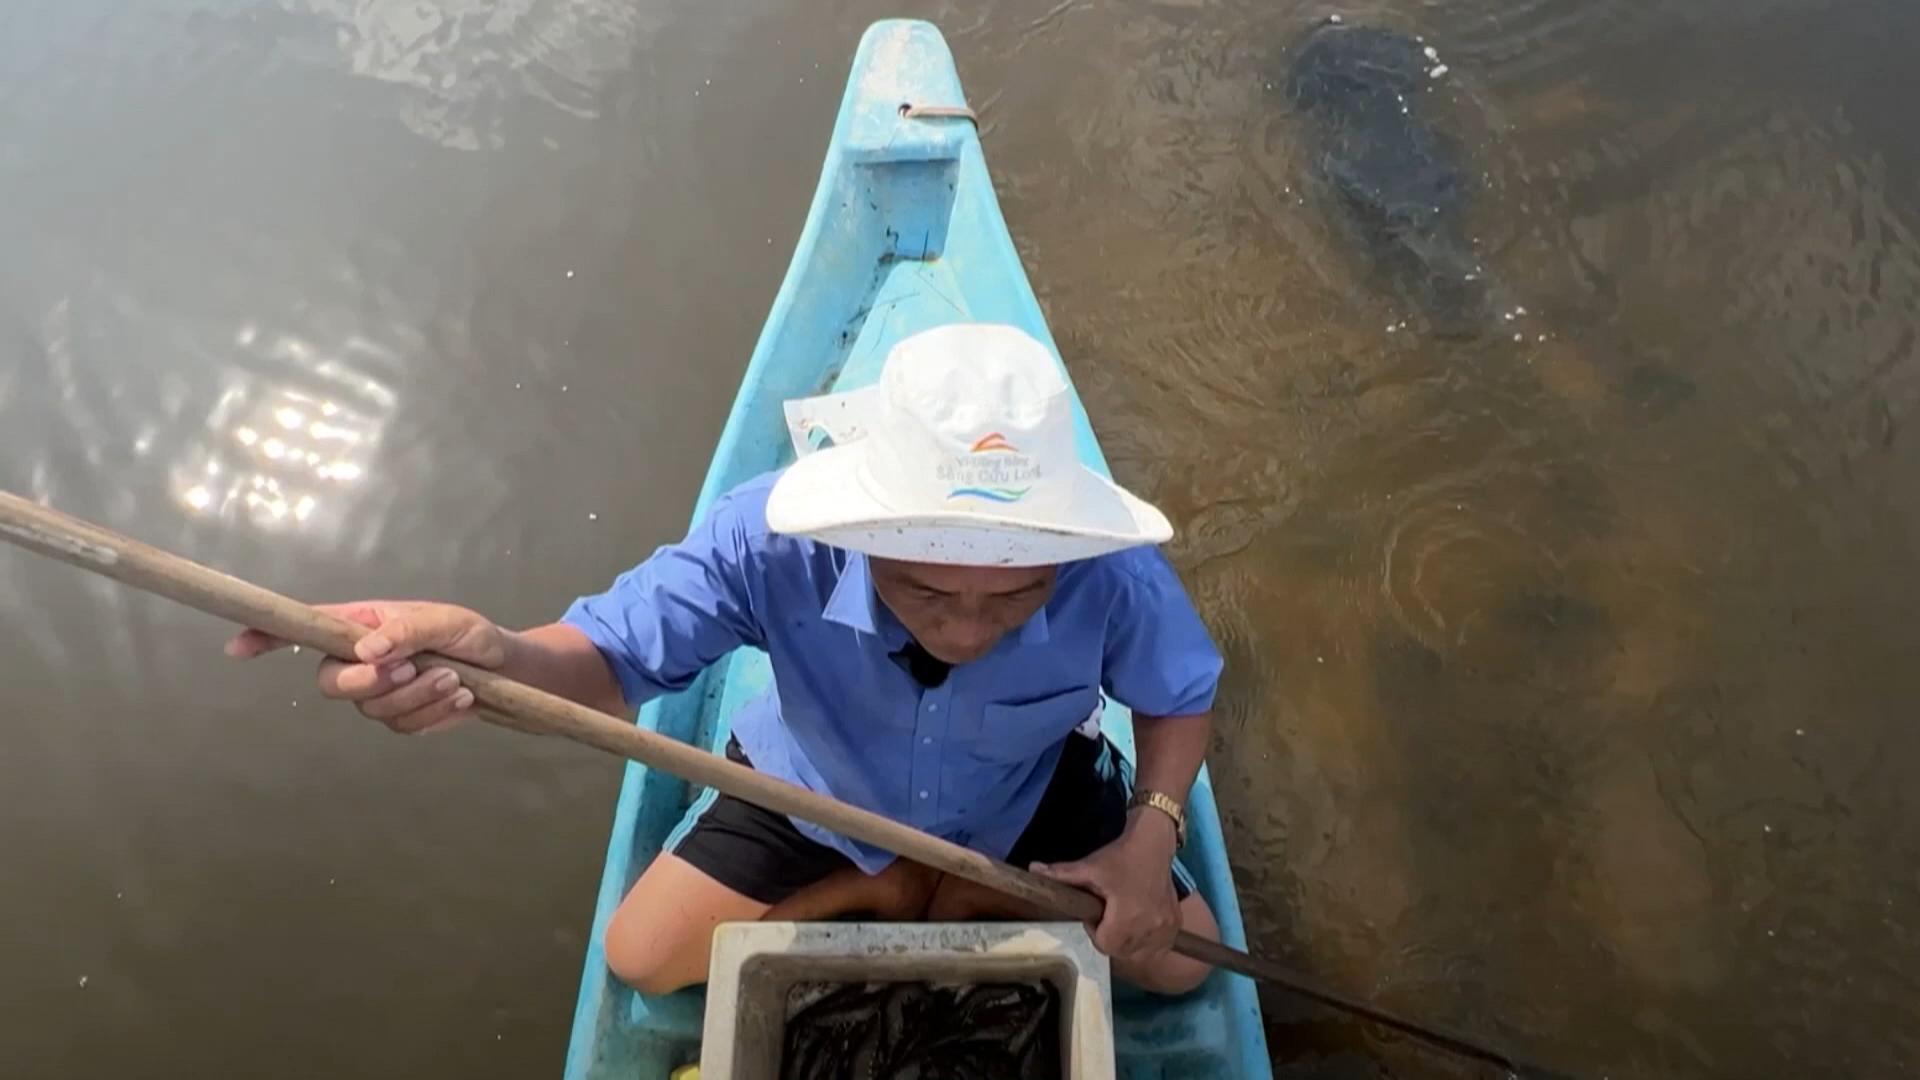 氣候變遷導致海平面上升，湄公河下游三角洲越頻繁地發生海水倒灌。 當地的稻農索性在水塘裡養起了魚蝦，倒也提升了收入。 但是，長期來看，氣候變遷必然對當地農業造成重大衝擊。